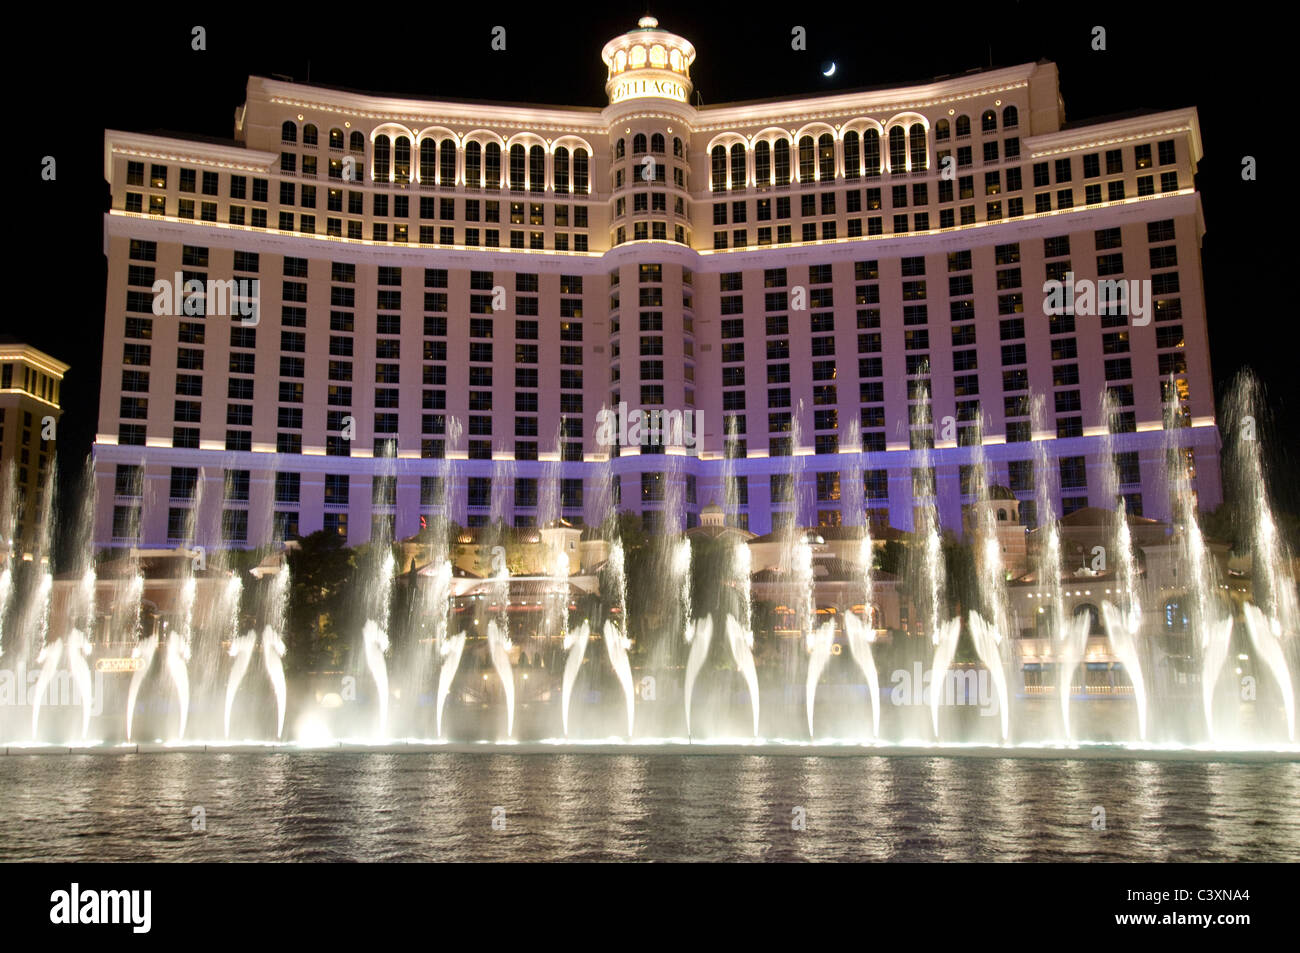 Die Brunnen von Bellagio zeigen in der Nacht vor dem Bellagio Hotel und Casino. Stockfoto